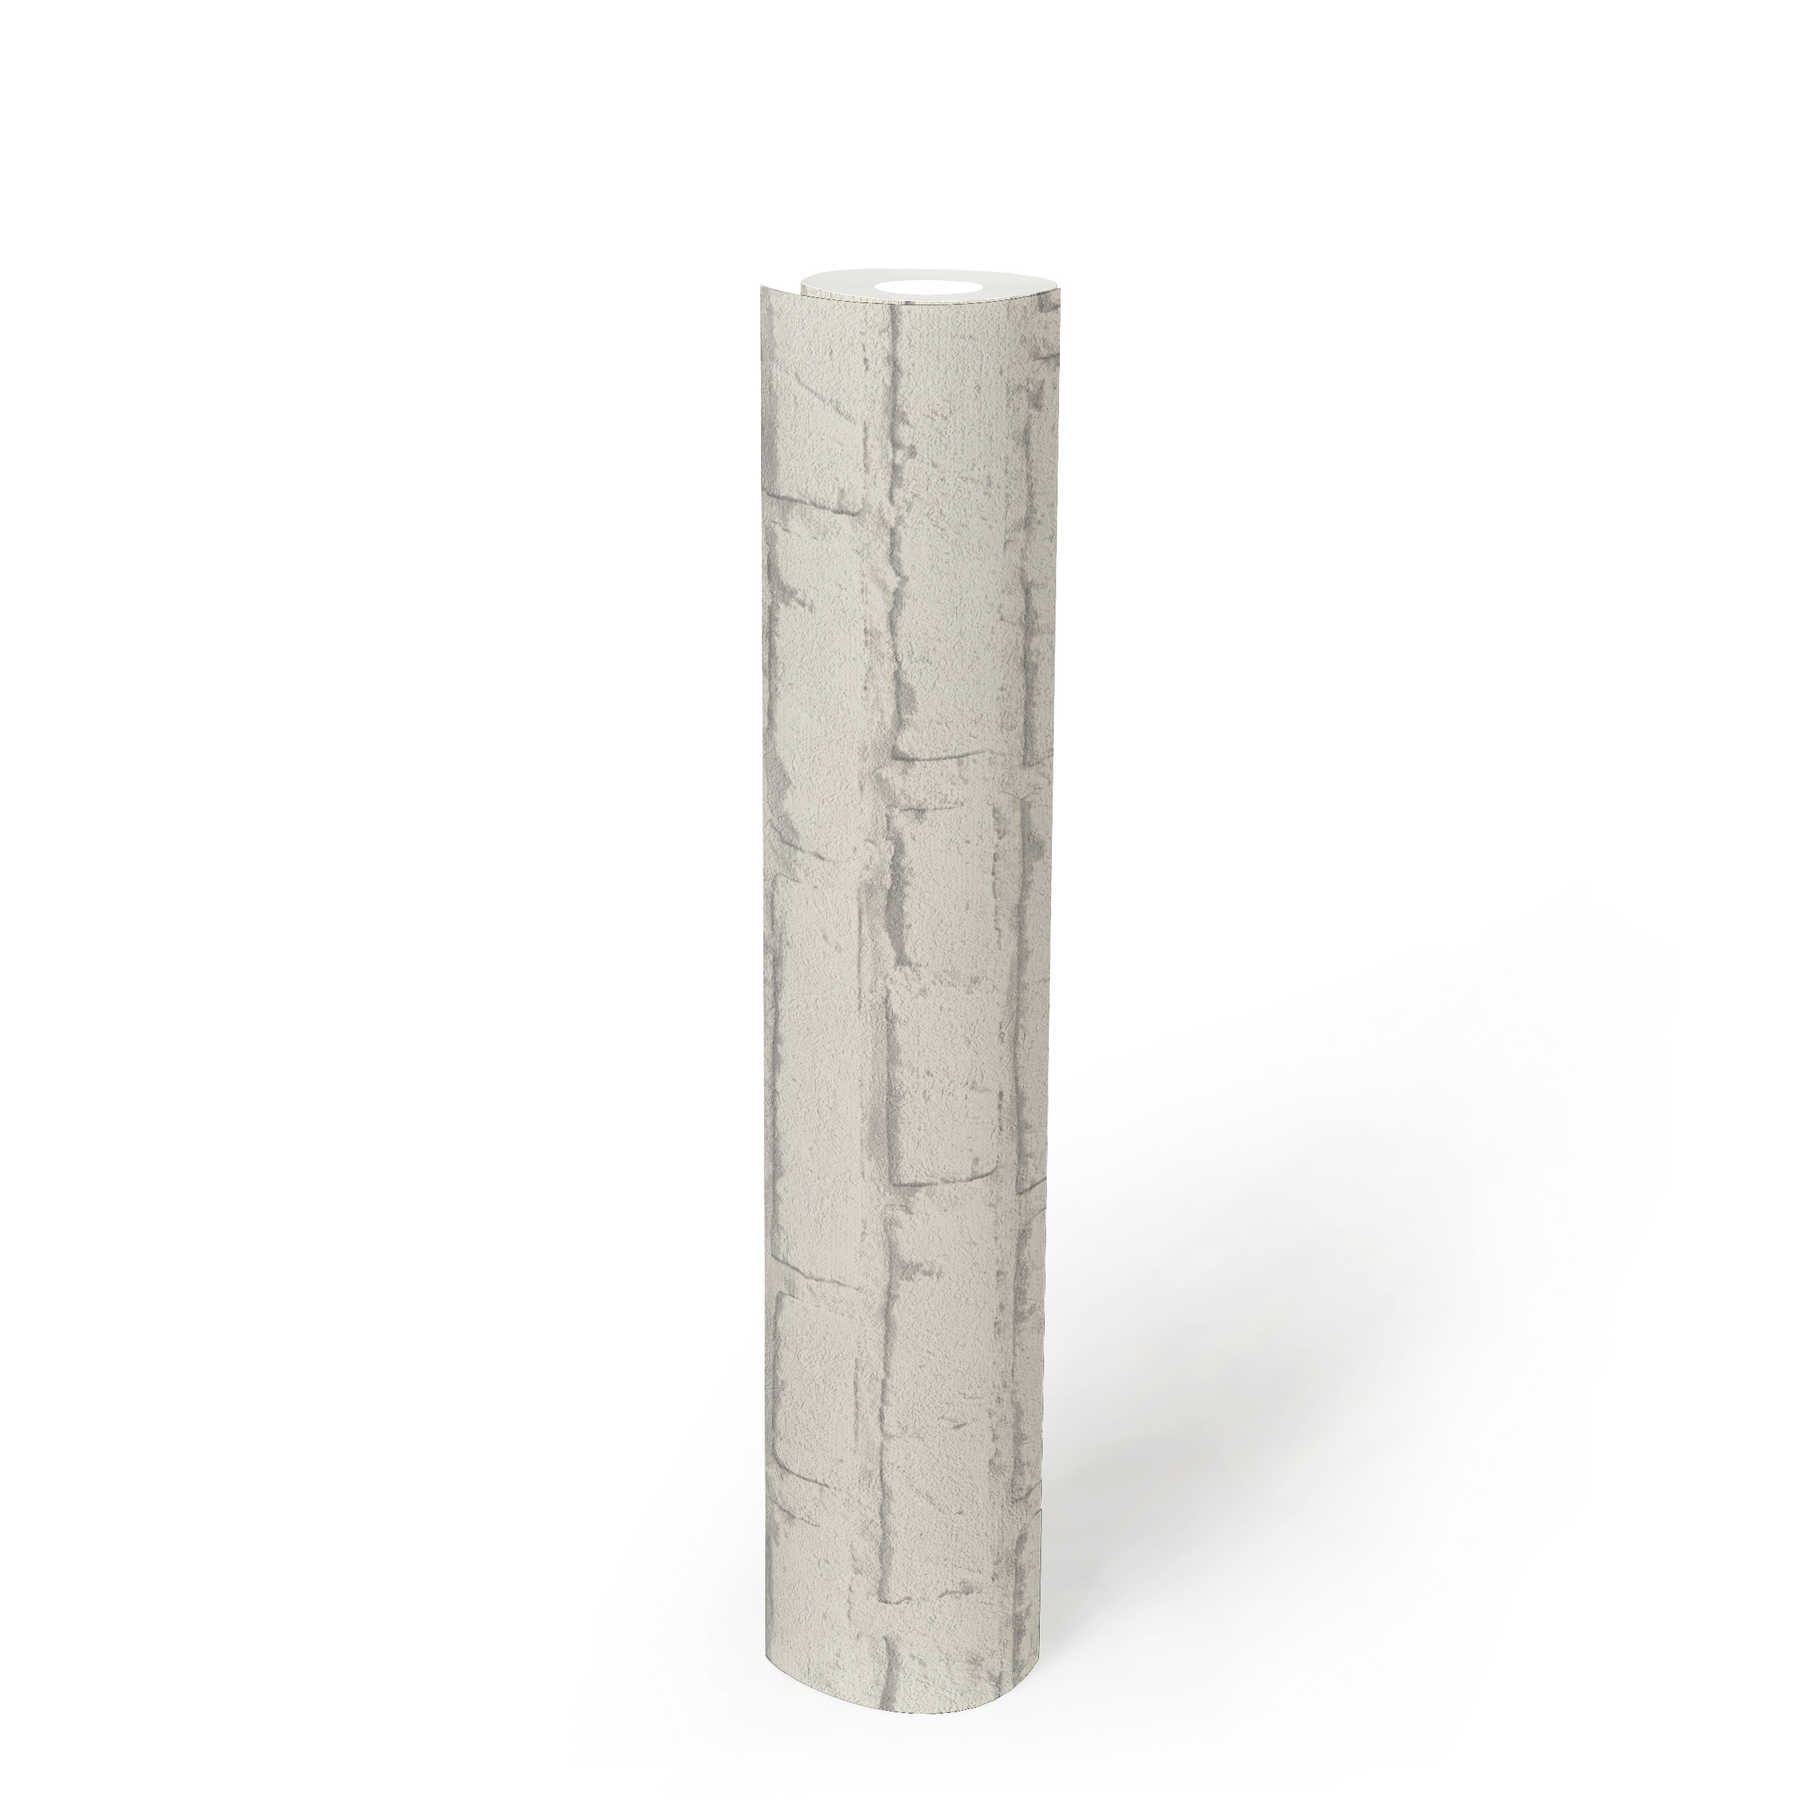             Papier peint pierre, mur de briques blanches avec motif structuré - gris, blanc
        